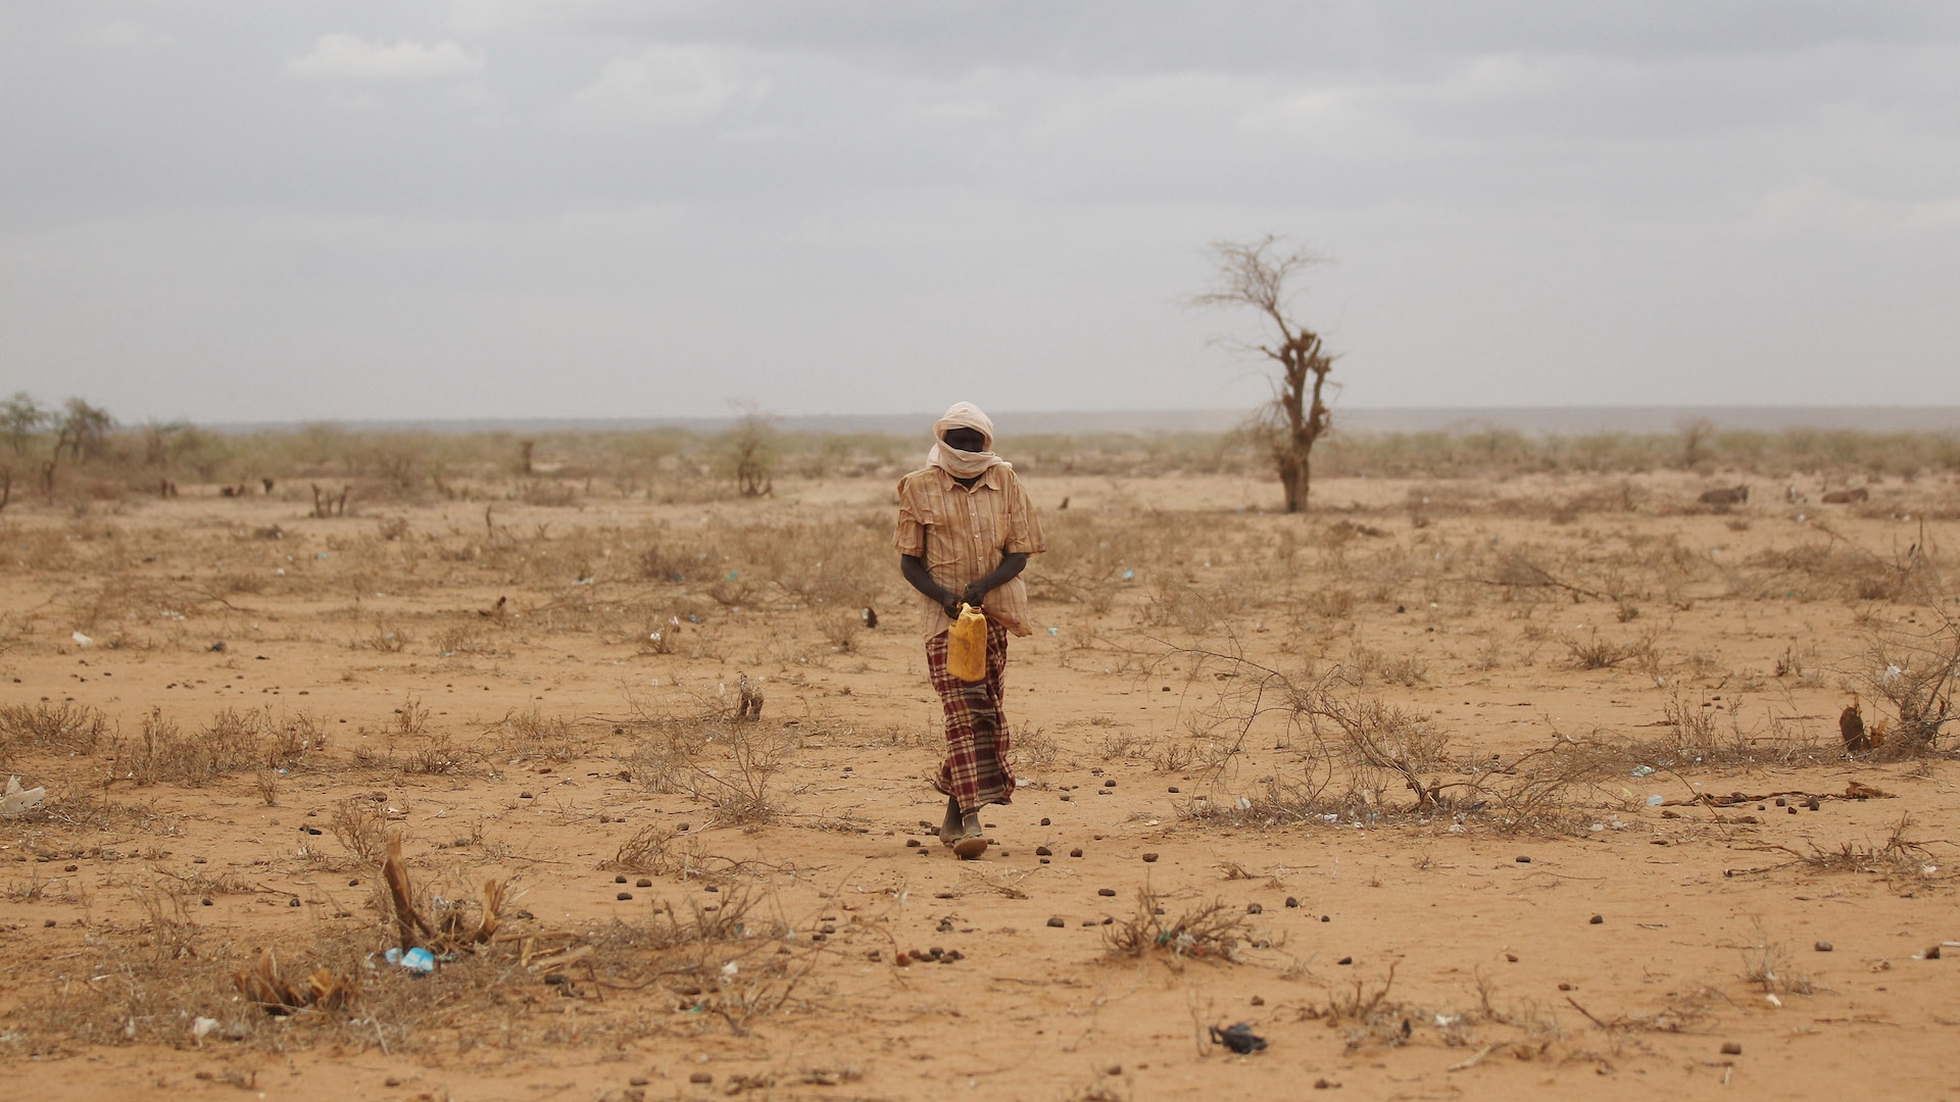 L'Onu lancia l'allarme: circa 13 milioni di persone rischiano di morire di fame nel Corno d'Africa